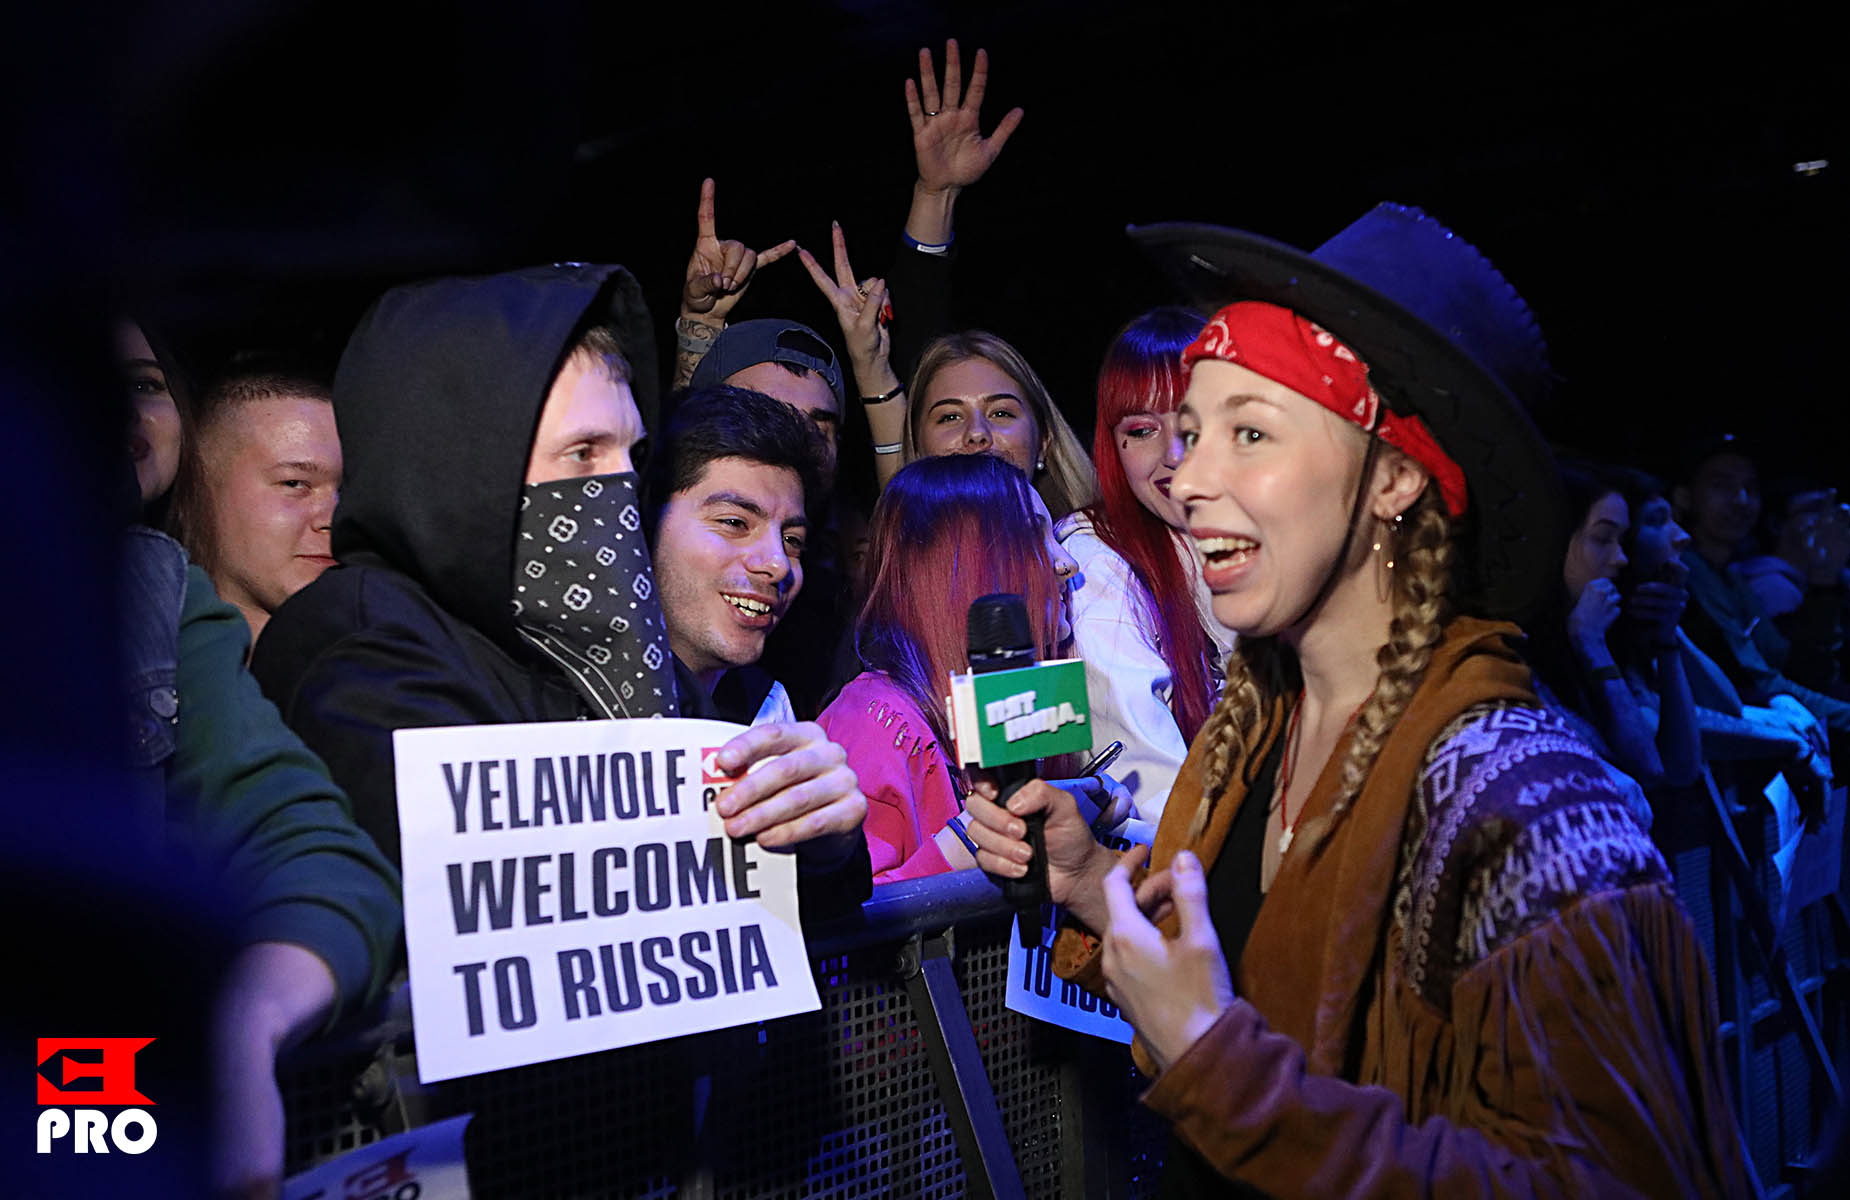 Yelawolf, Москва, 27.02.2020, ePro/Юлия Тонева